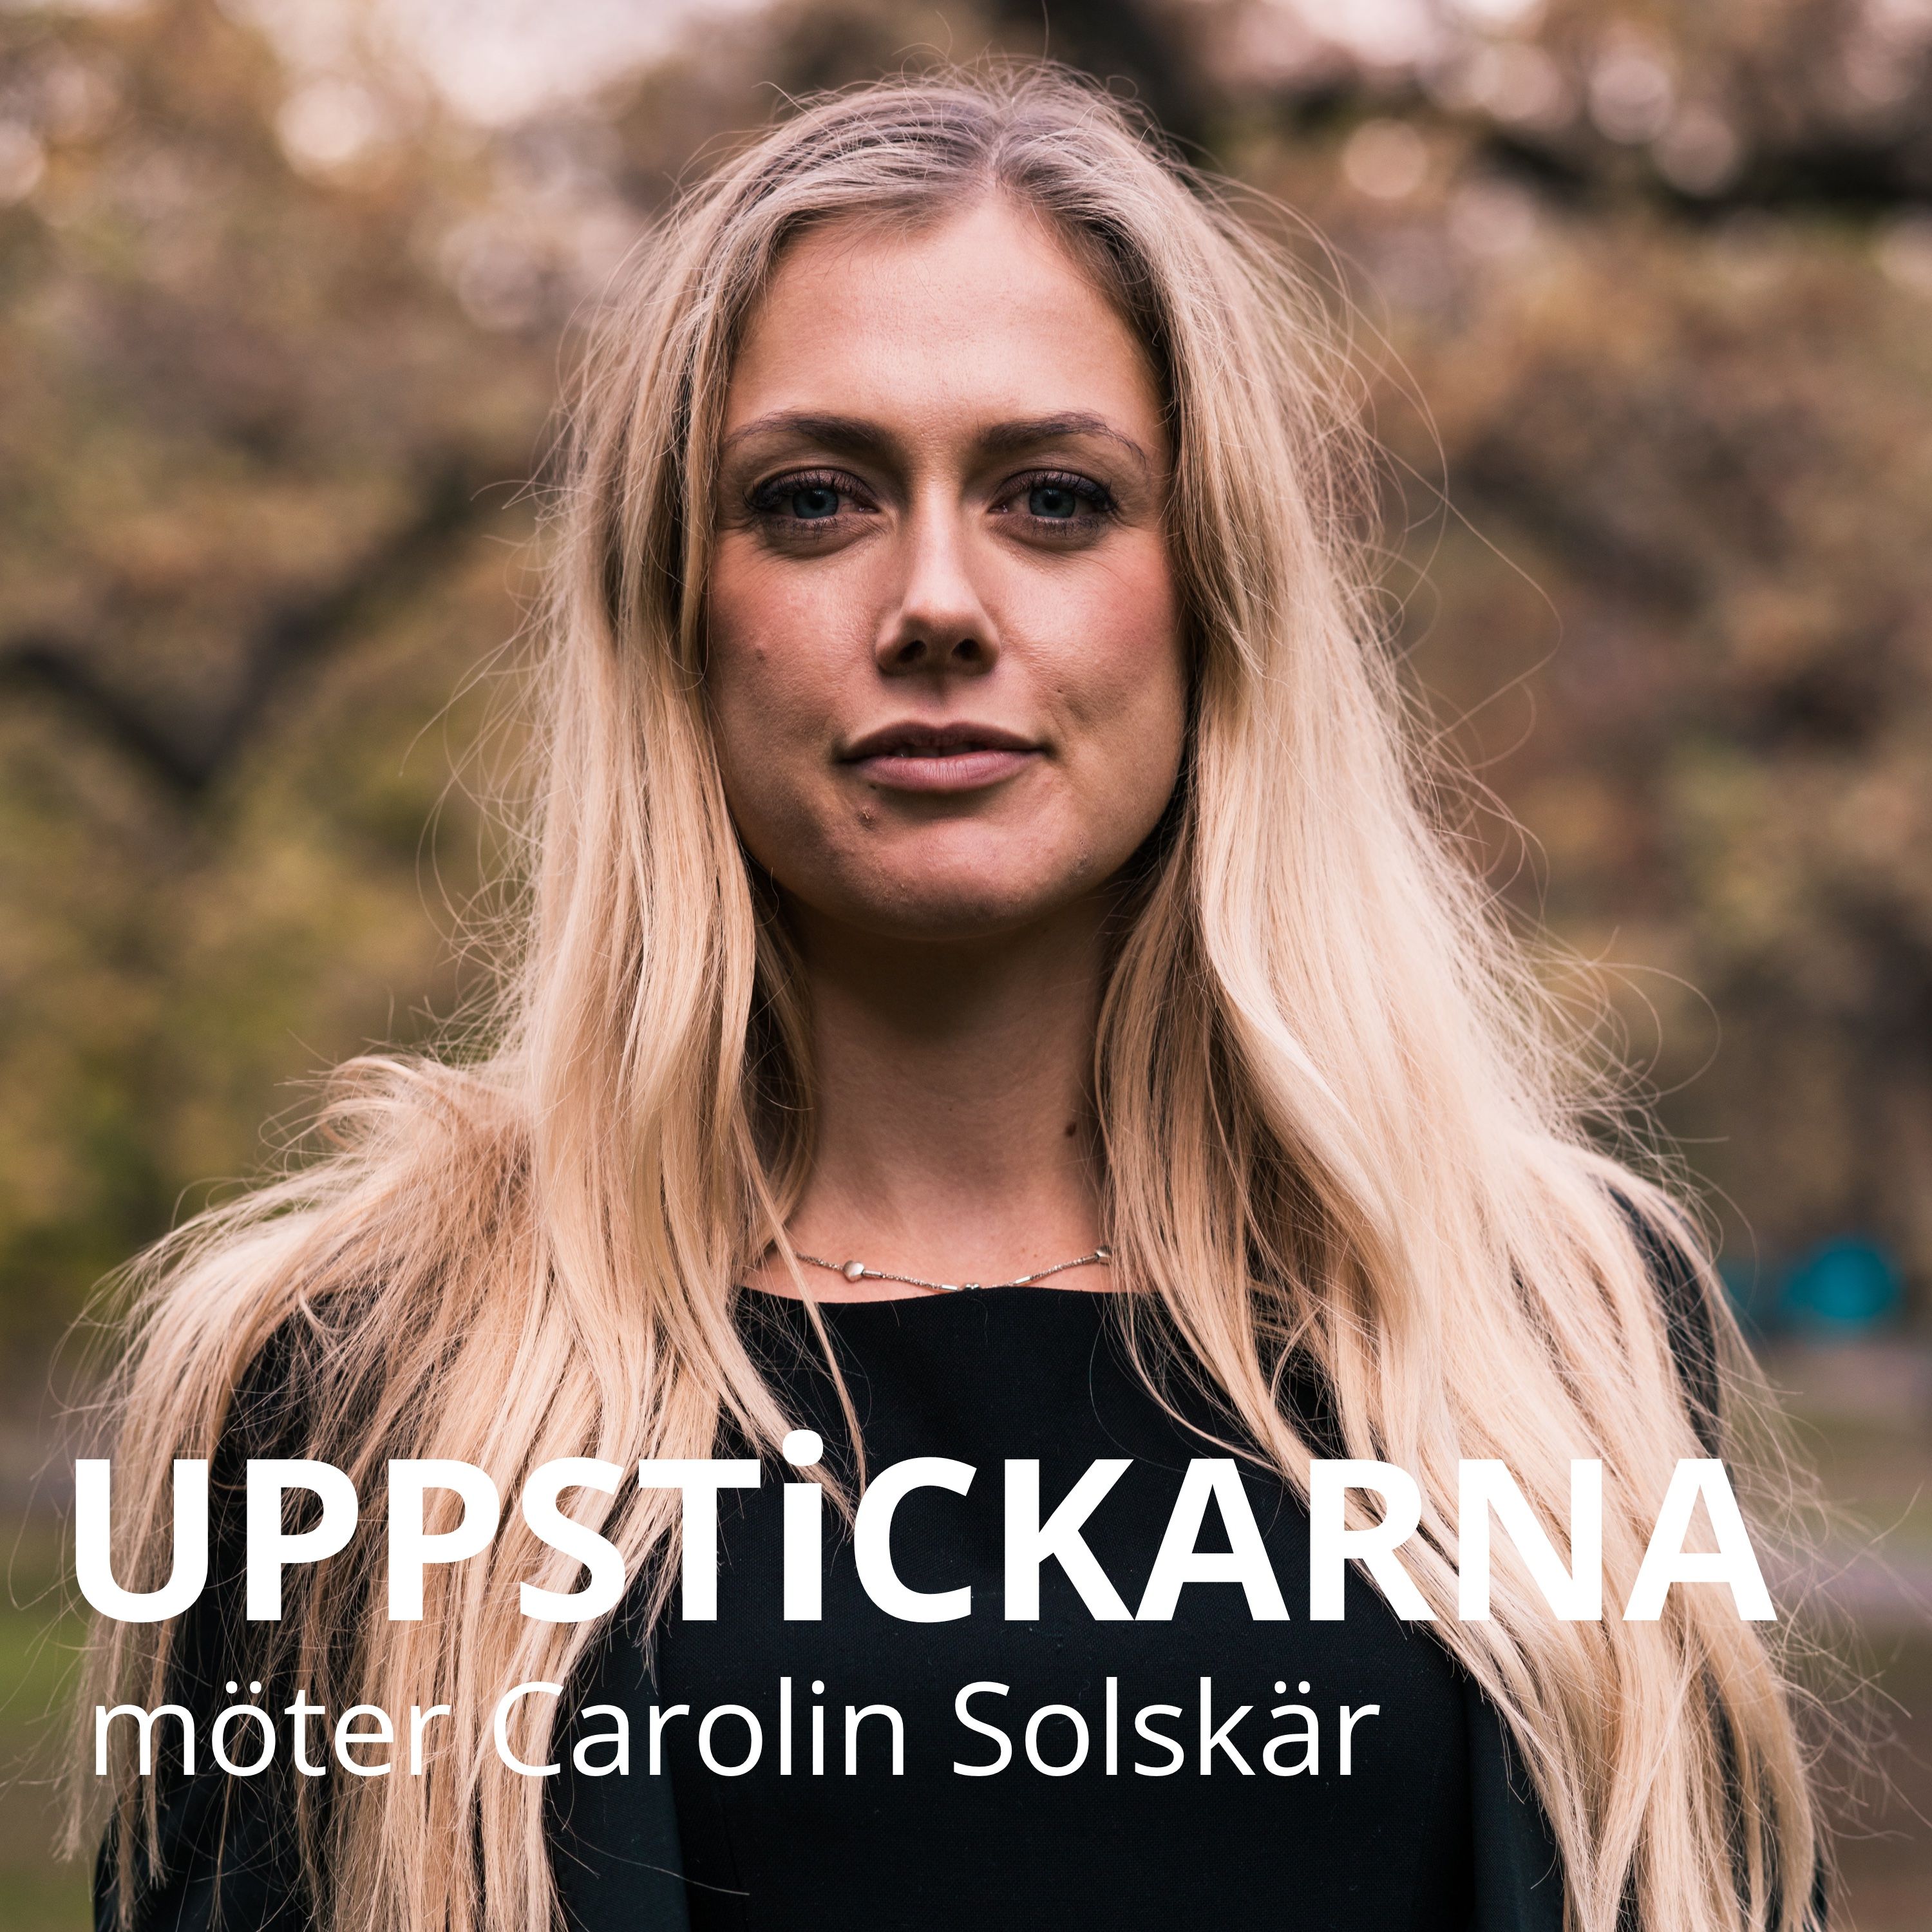 Uppstickarna möter Carolin Solskär